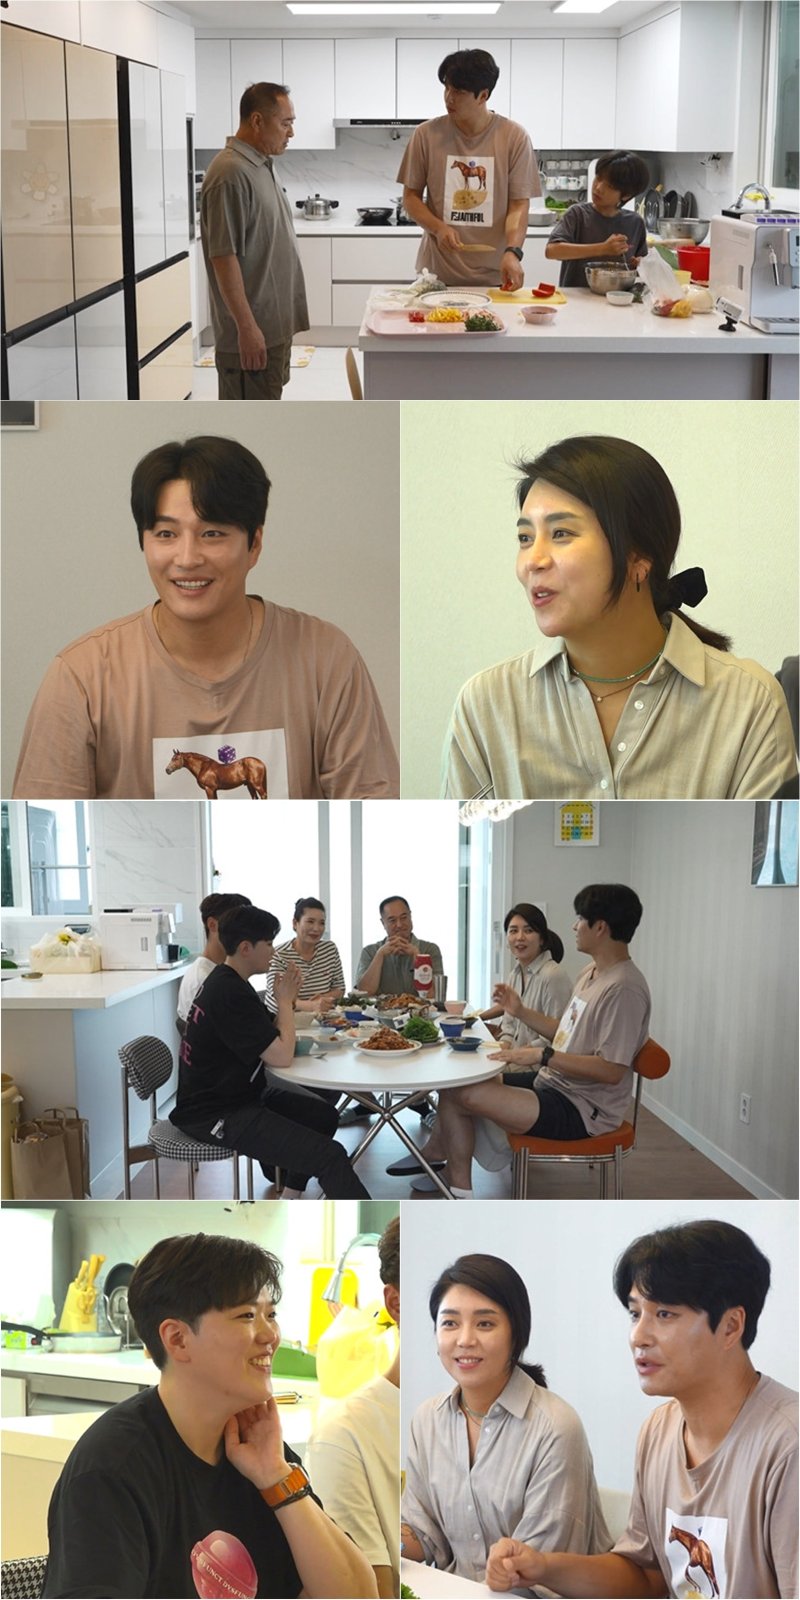 민우혁, 과거 비혼주의자 고백 "♥이세미와 연애 4개월만에 결혼 결심"